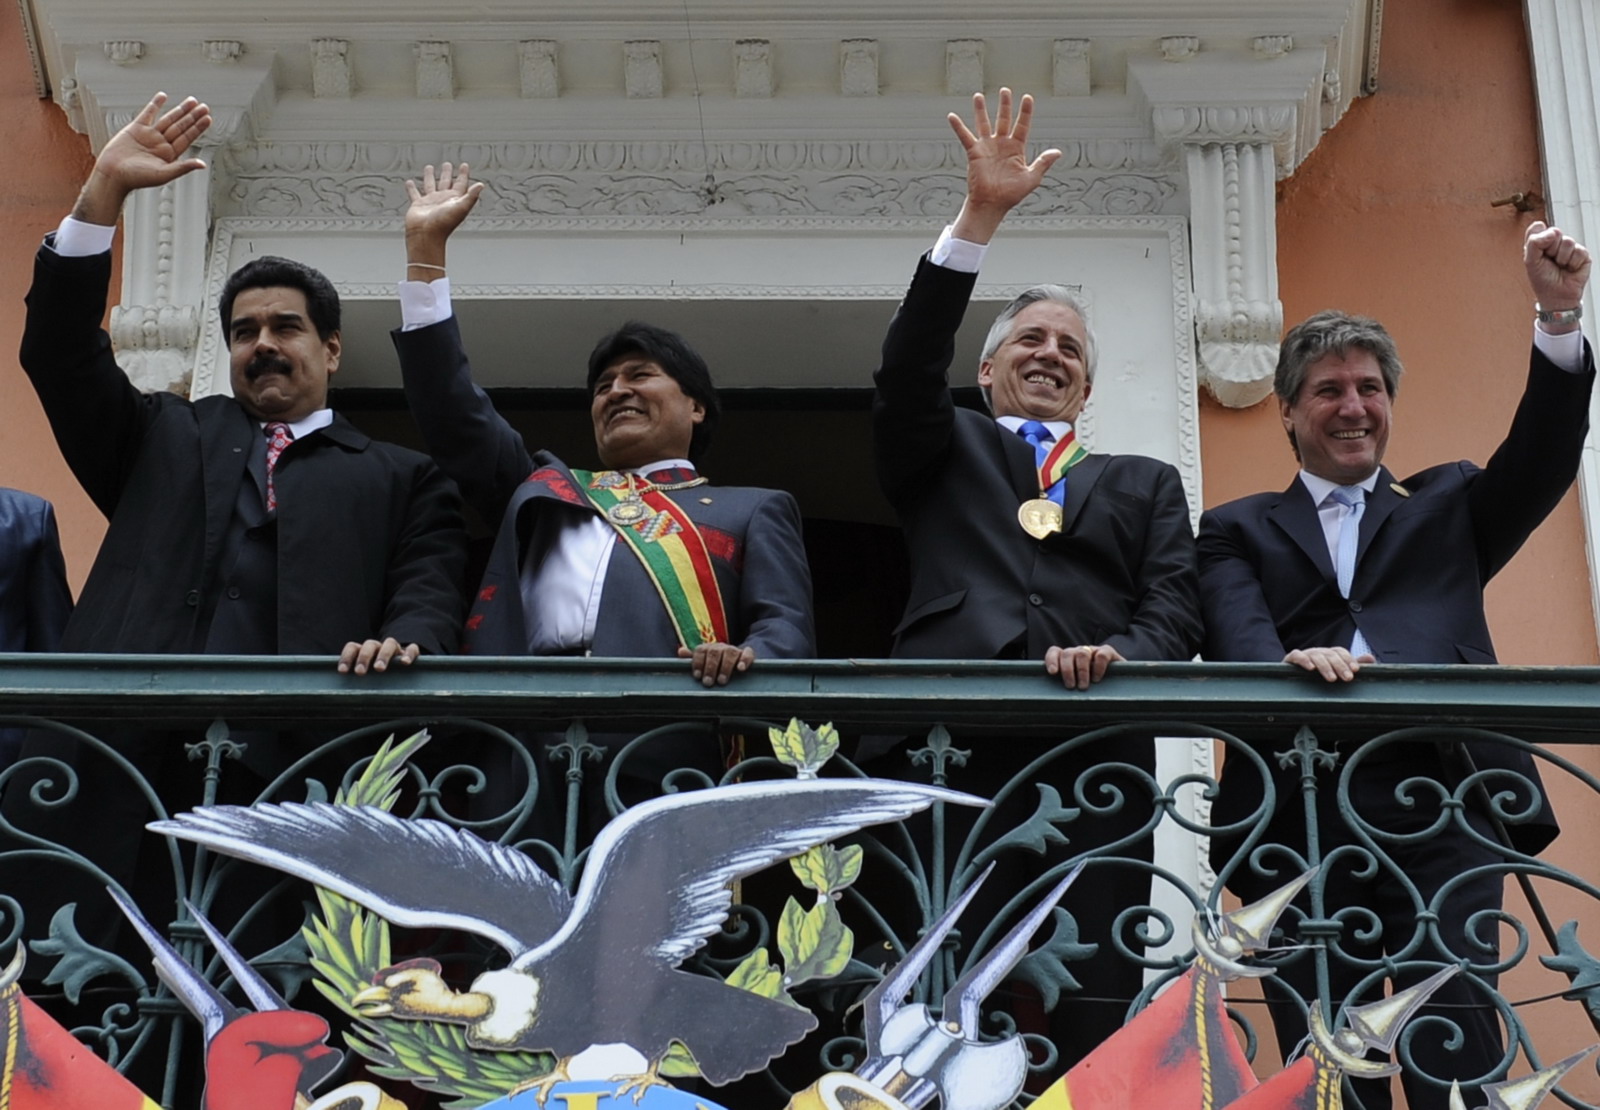 Nyolcpontos programot hirdetett Evo Morales a harmadik mandátumára